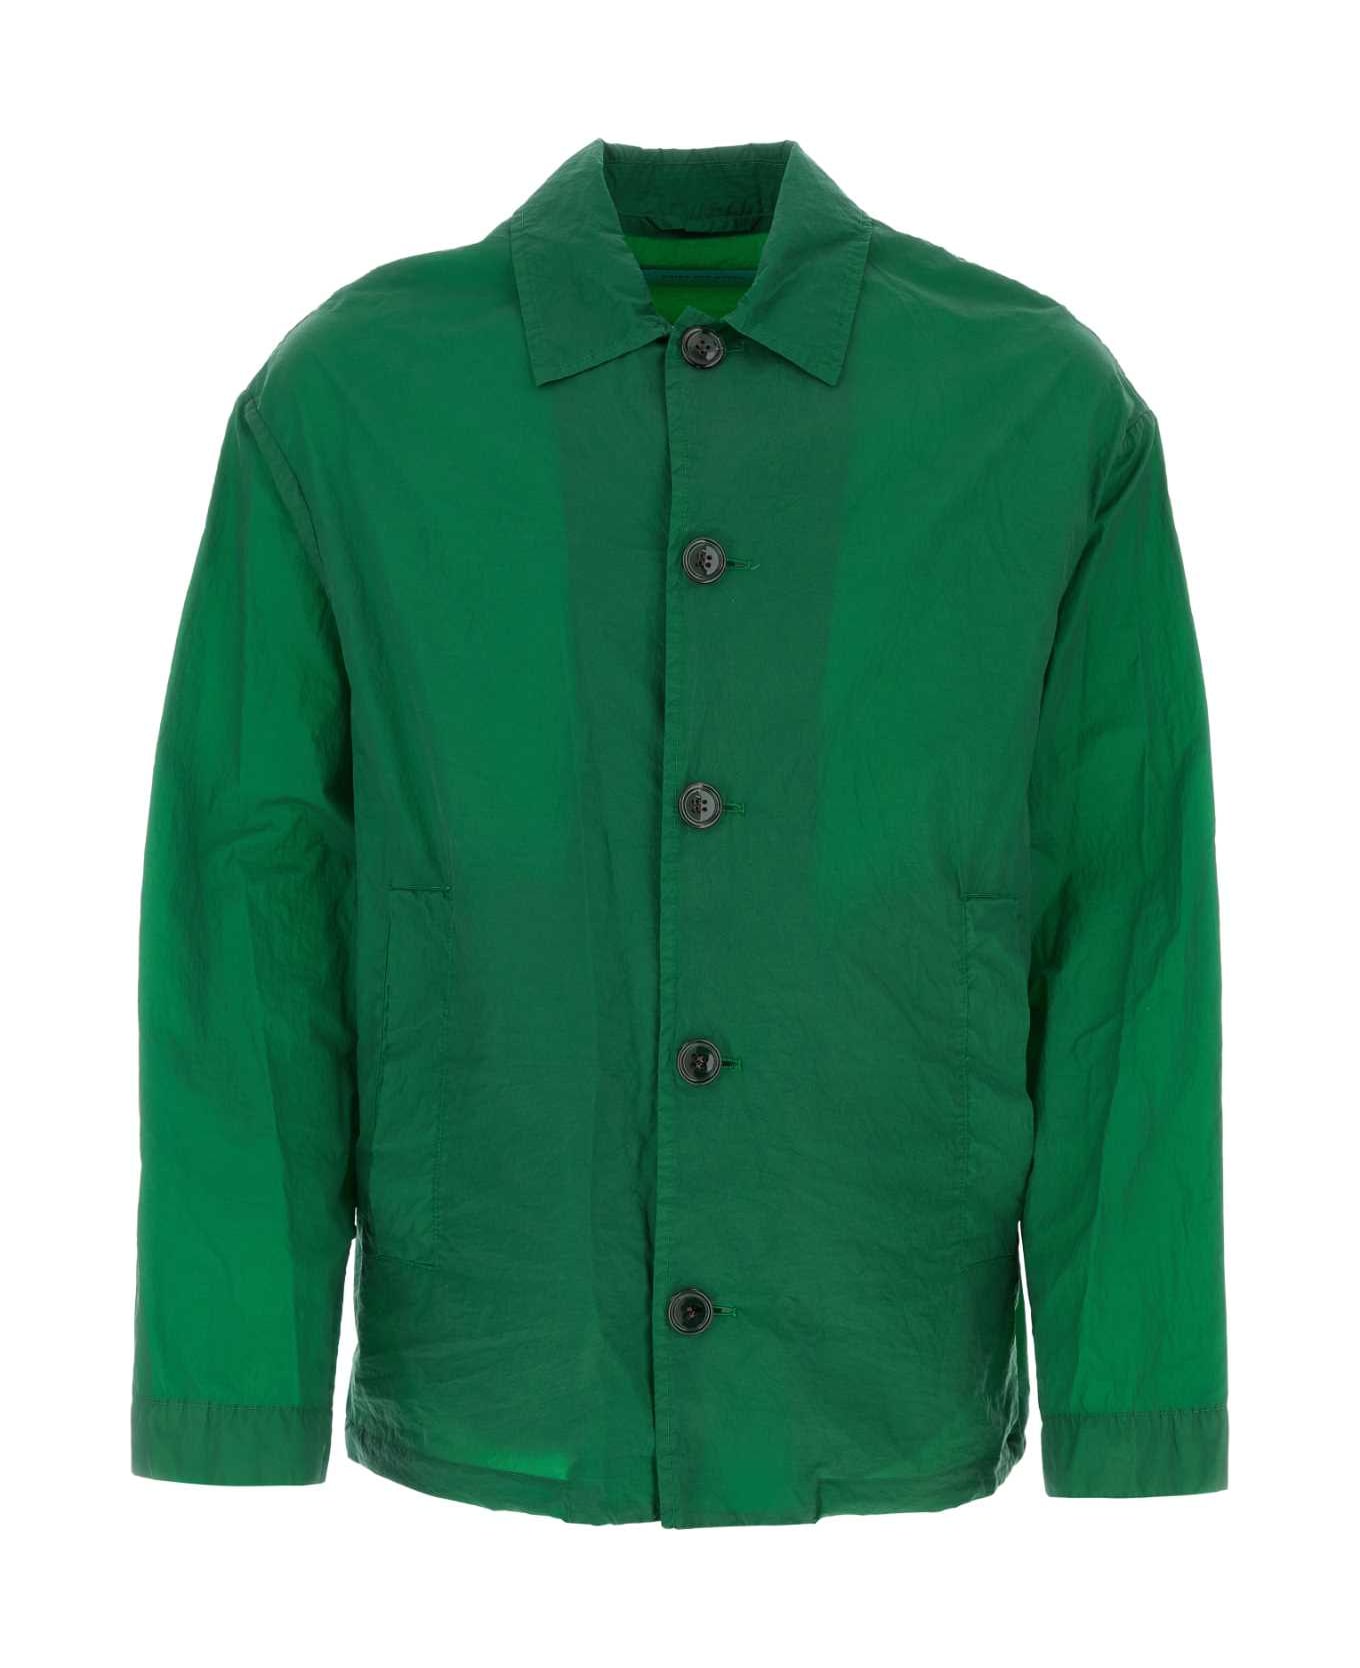 Dries Van Noten Grass Green Coated Denim Vormac Jacket - 604